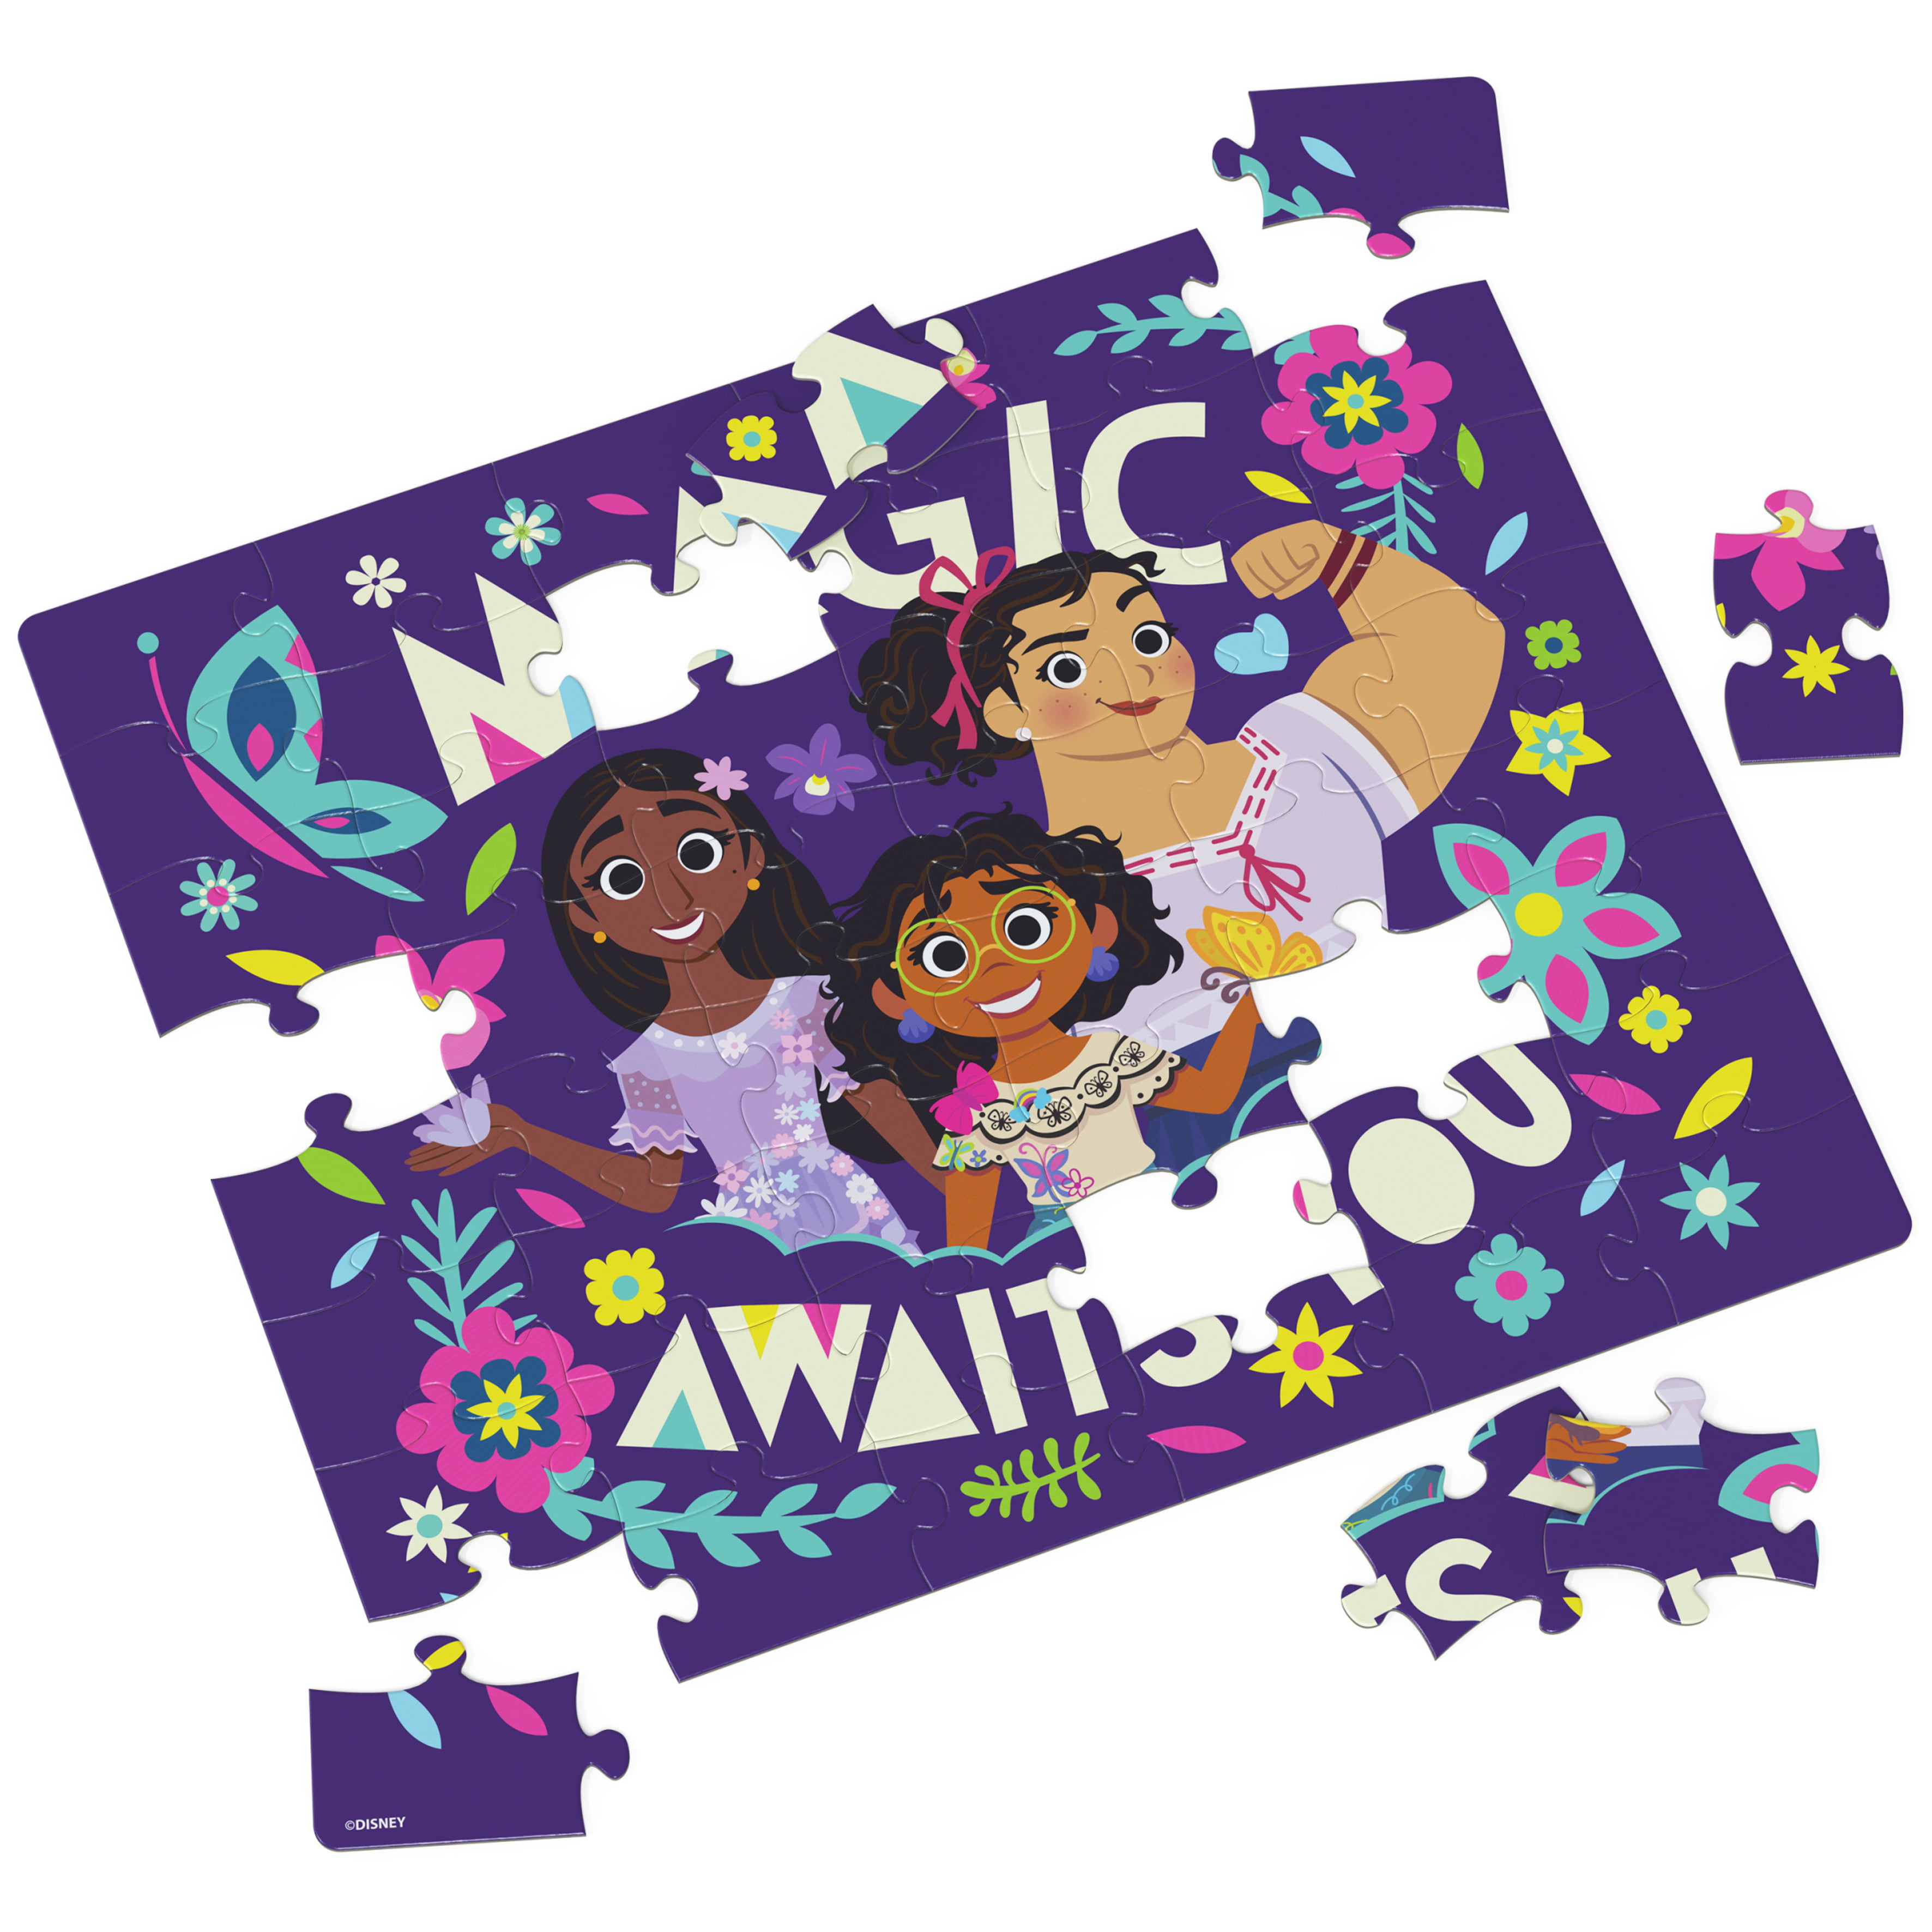 Puzzles 3x49 p - La magie d'Encanto / Disney Encanto